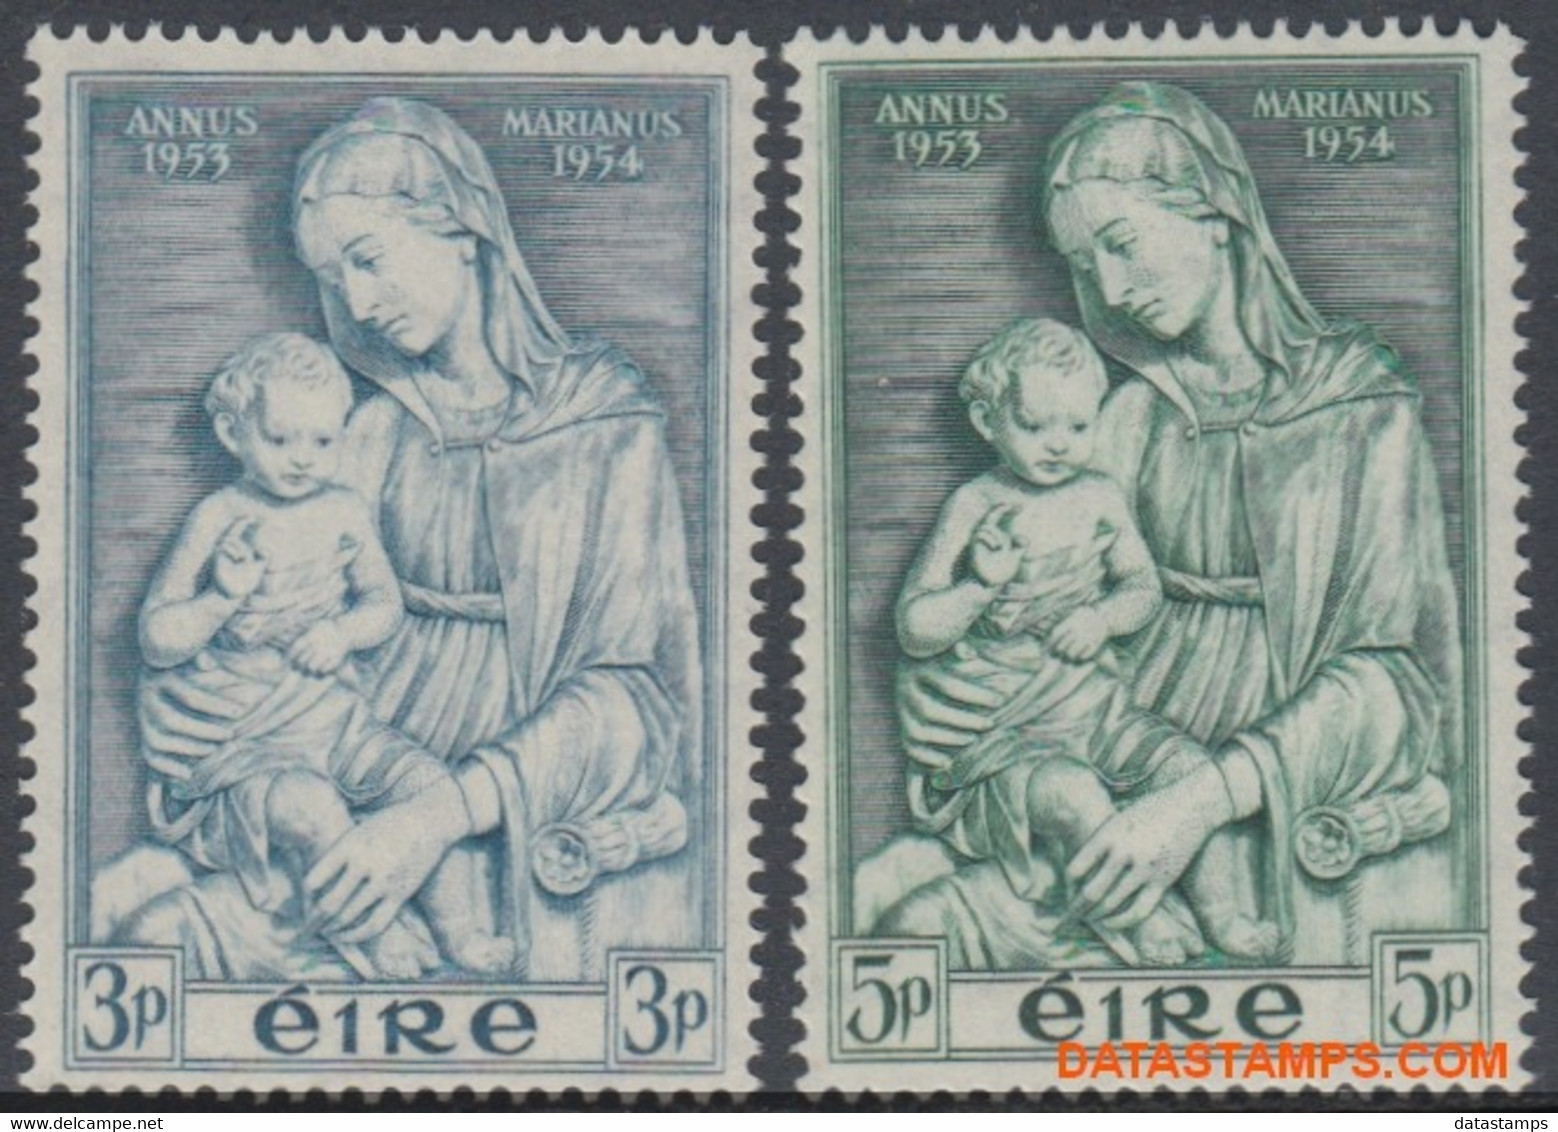 Ierland 1954 - Mi:120/121, Yv:122/123, Stamp - XX - Maria Year - Ongebruikt